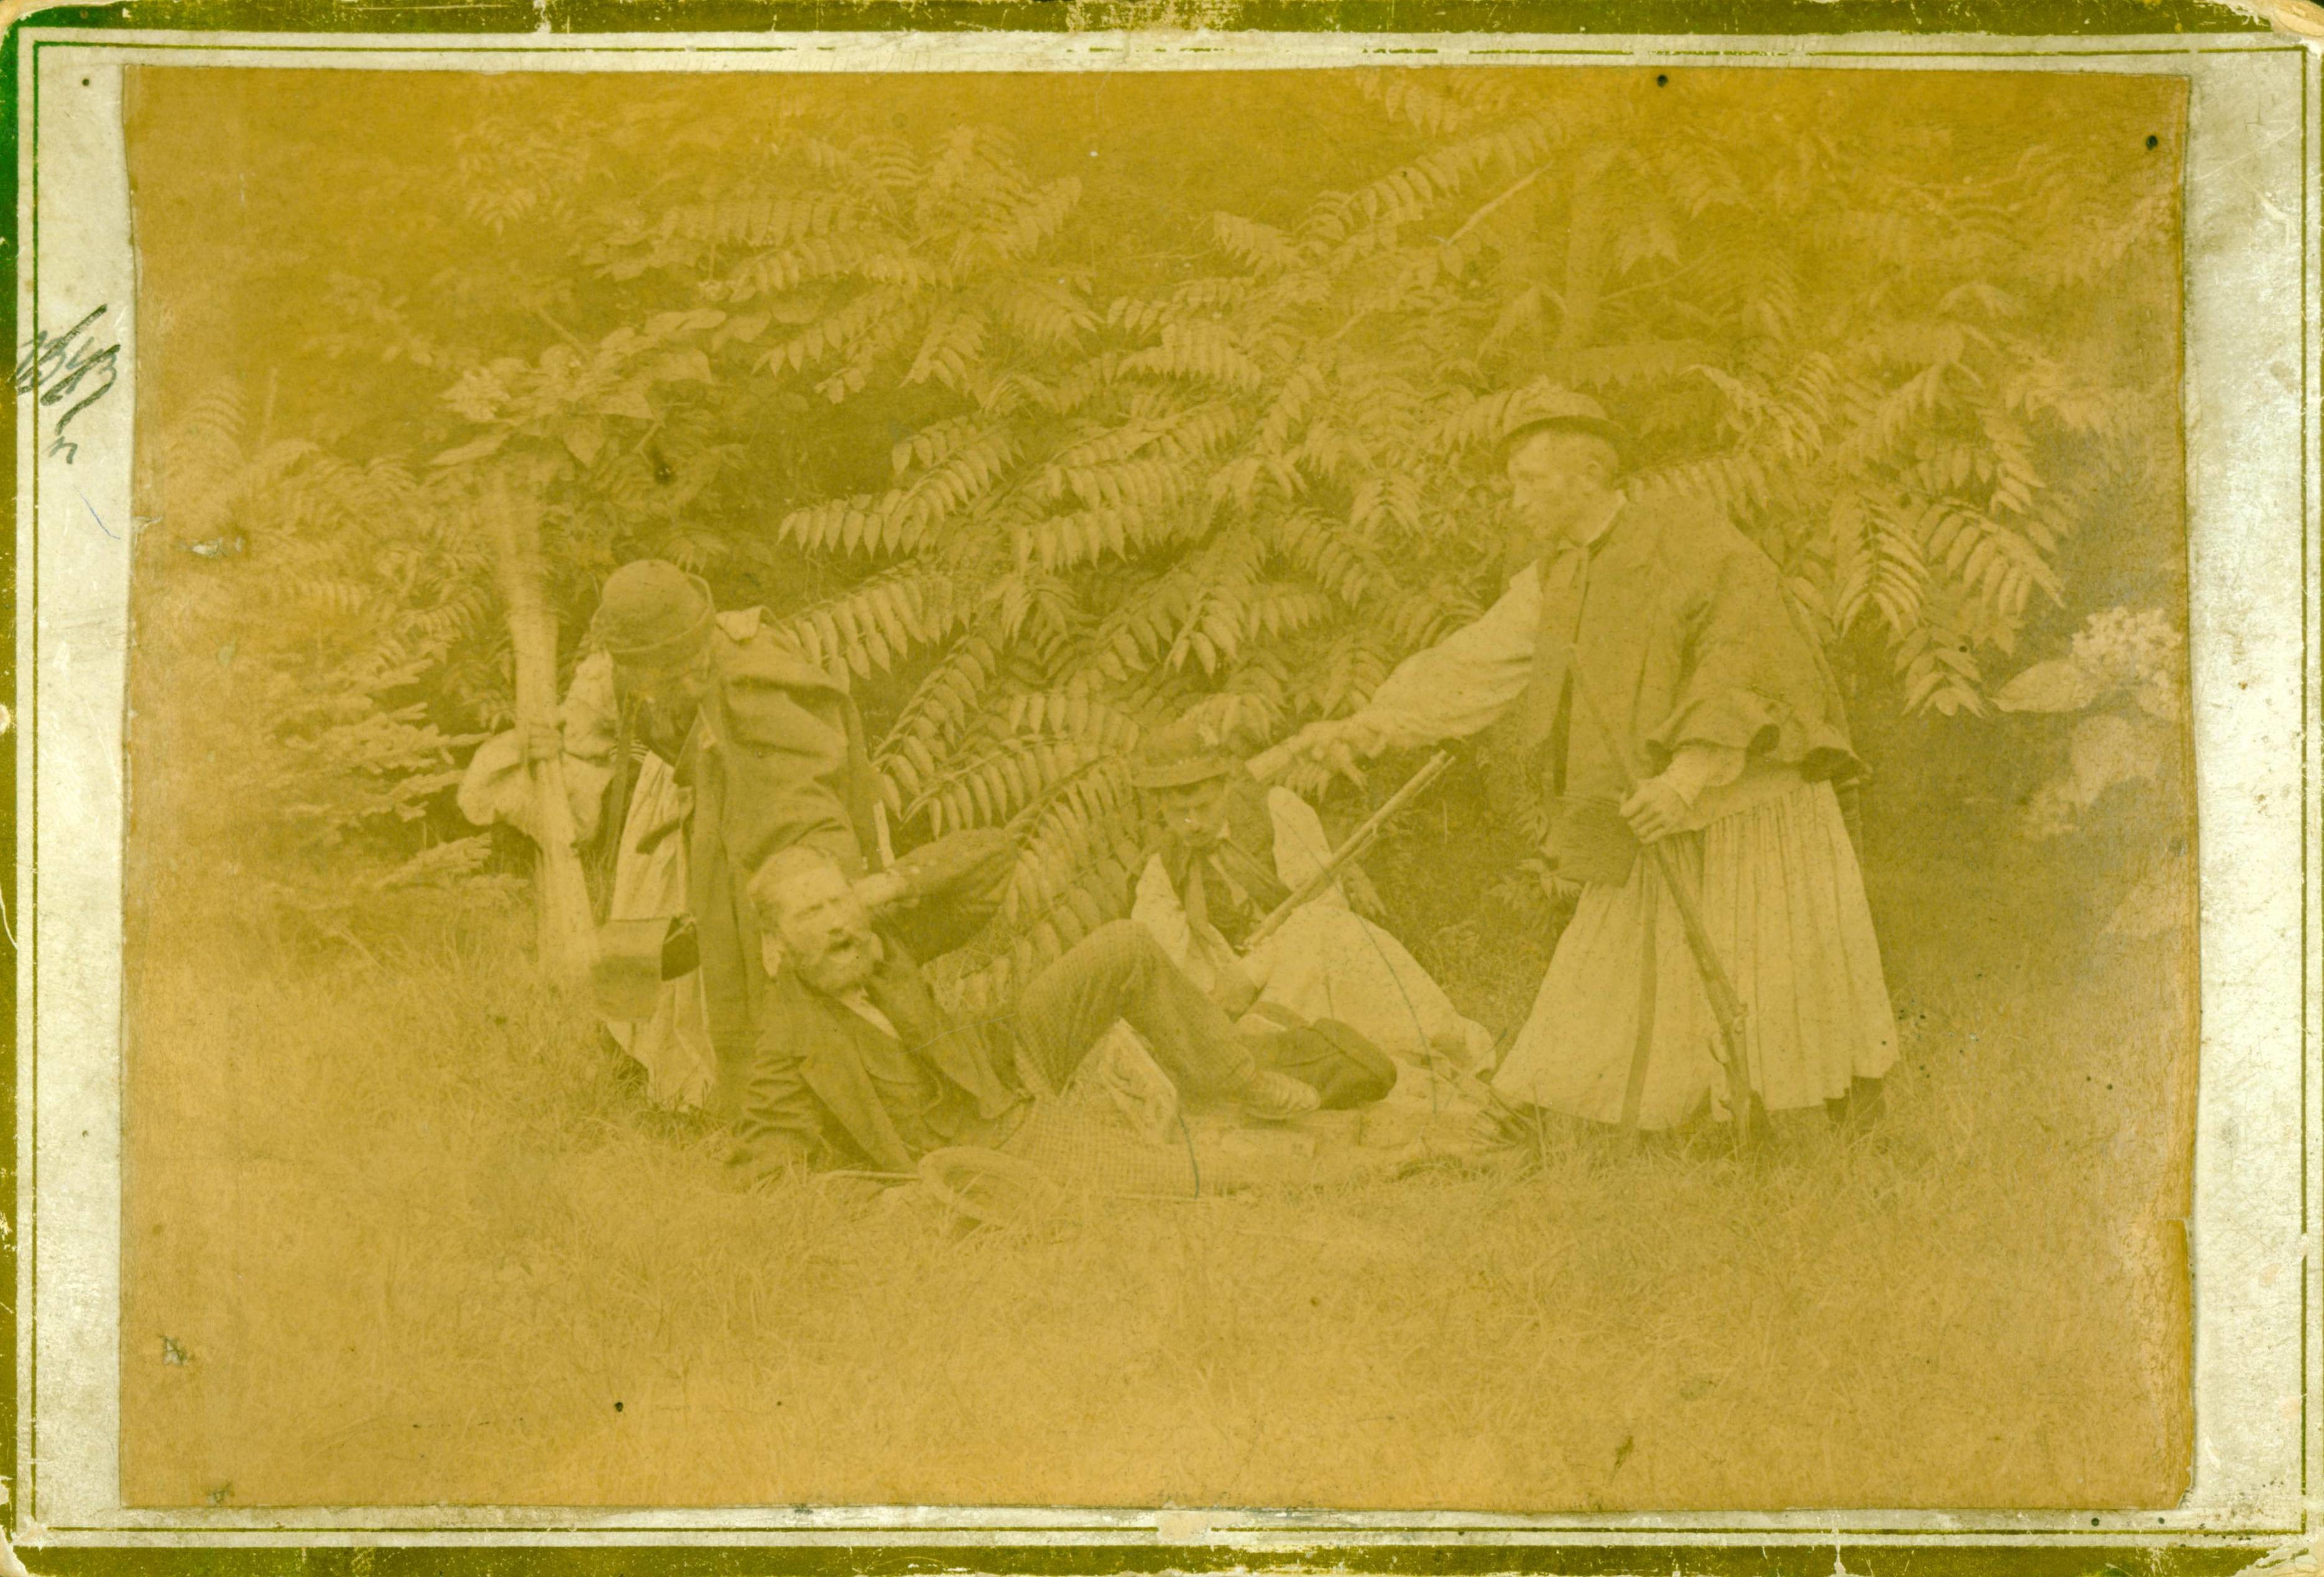 Betyár támadó jelenet az 1860-as évekből (színjátszók) (Rippl-Rónai Múzeum RR-F)